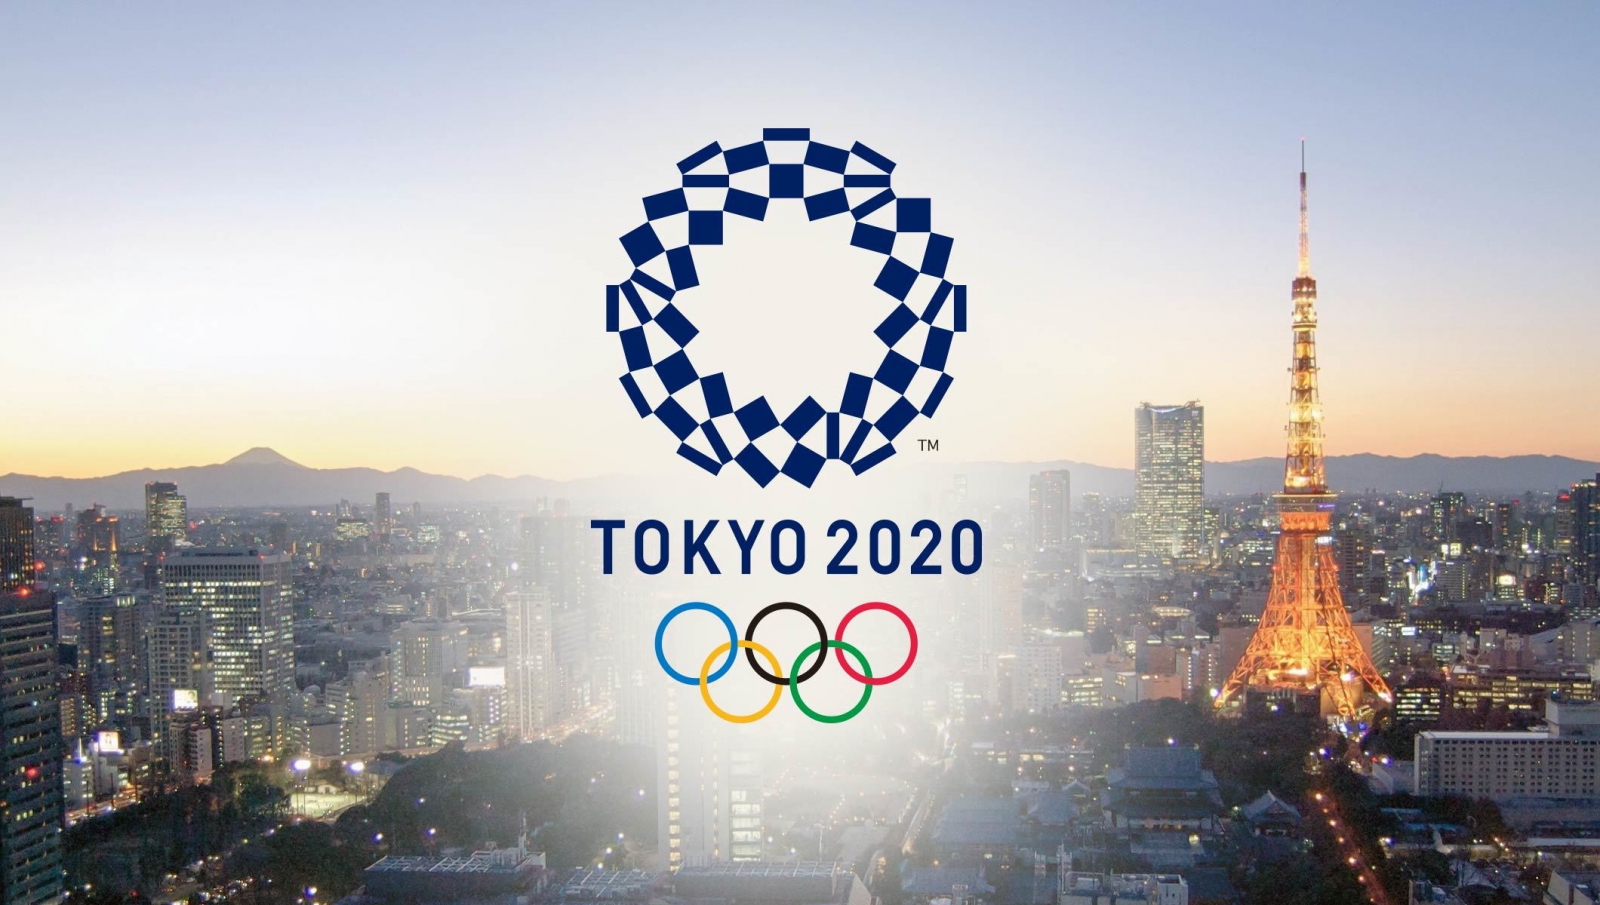 Сасаки уволен, Toyota устраивает демарш, японцы недовольны. Чем запомнятся закадровые страсти Олимпиады-2020